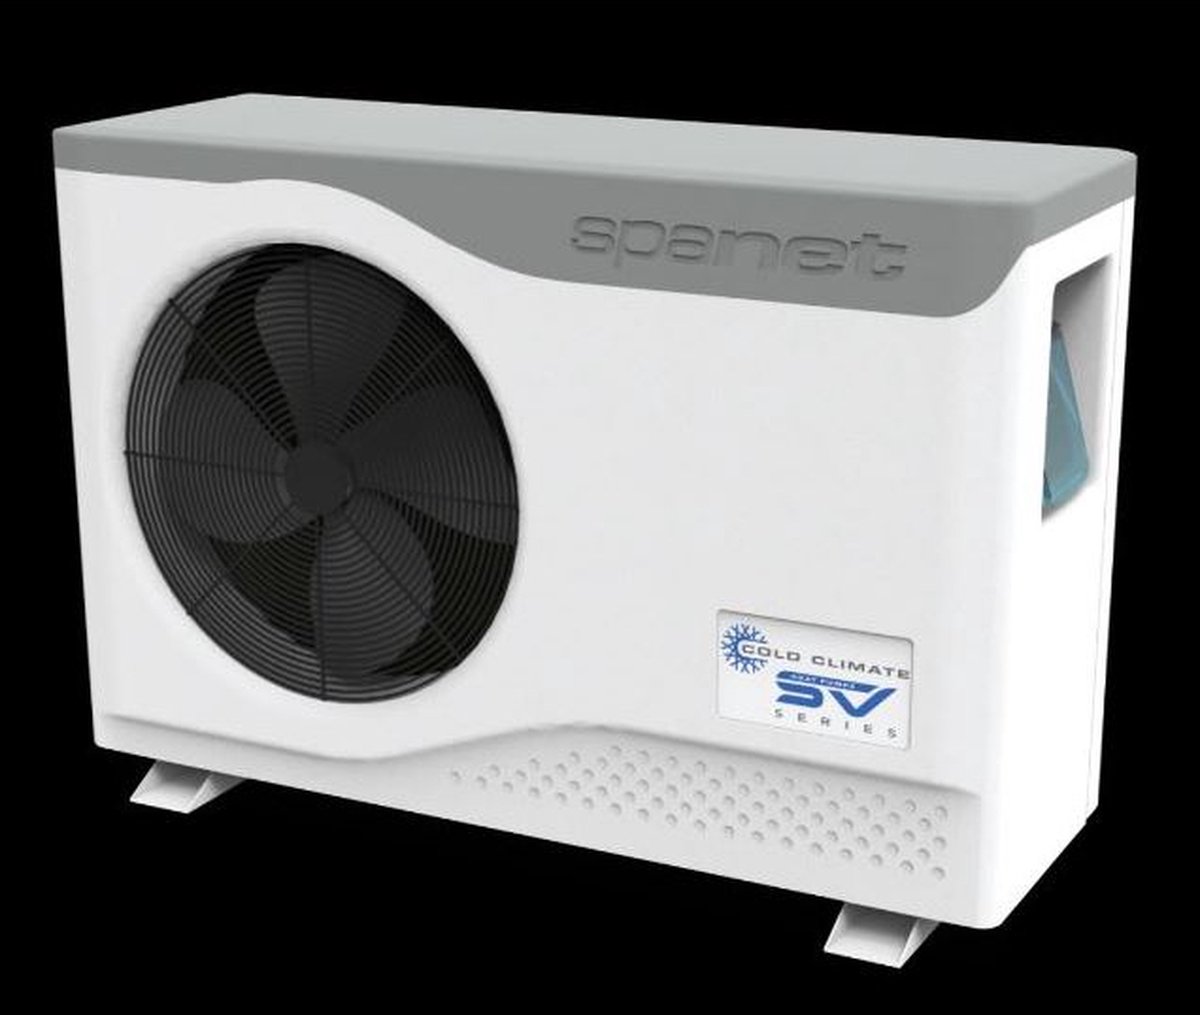 Spanet SV-serie geïntegreerde warmtepomp van 12,0 kW